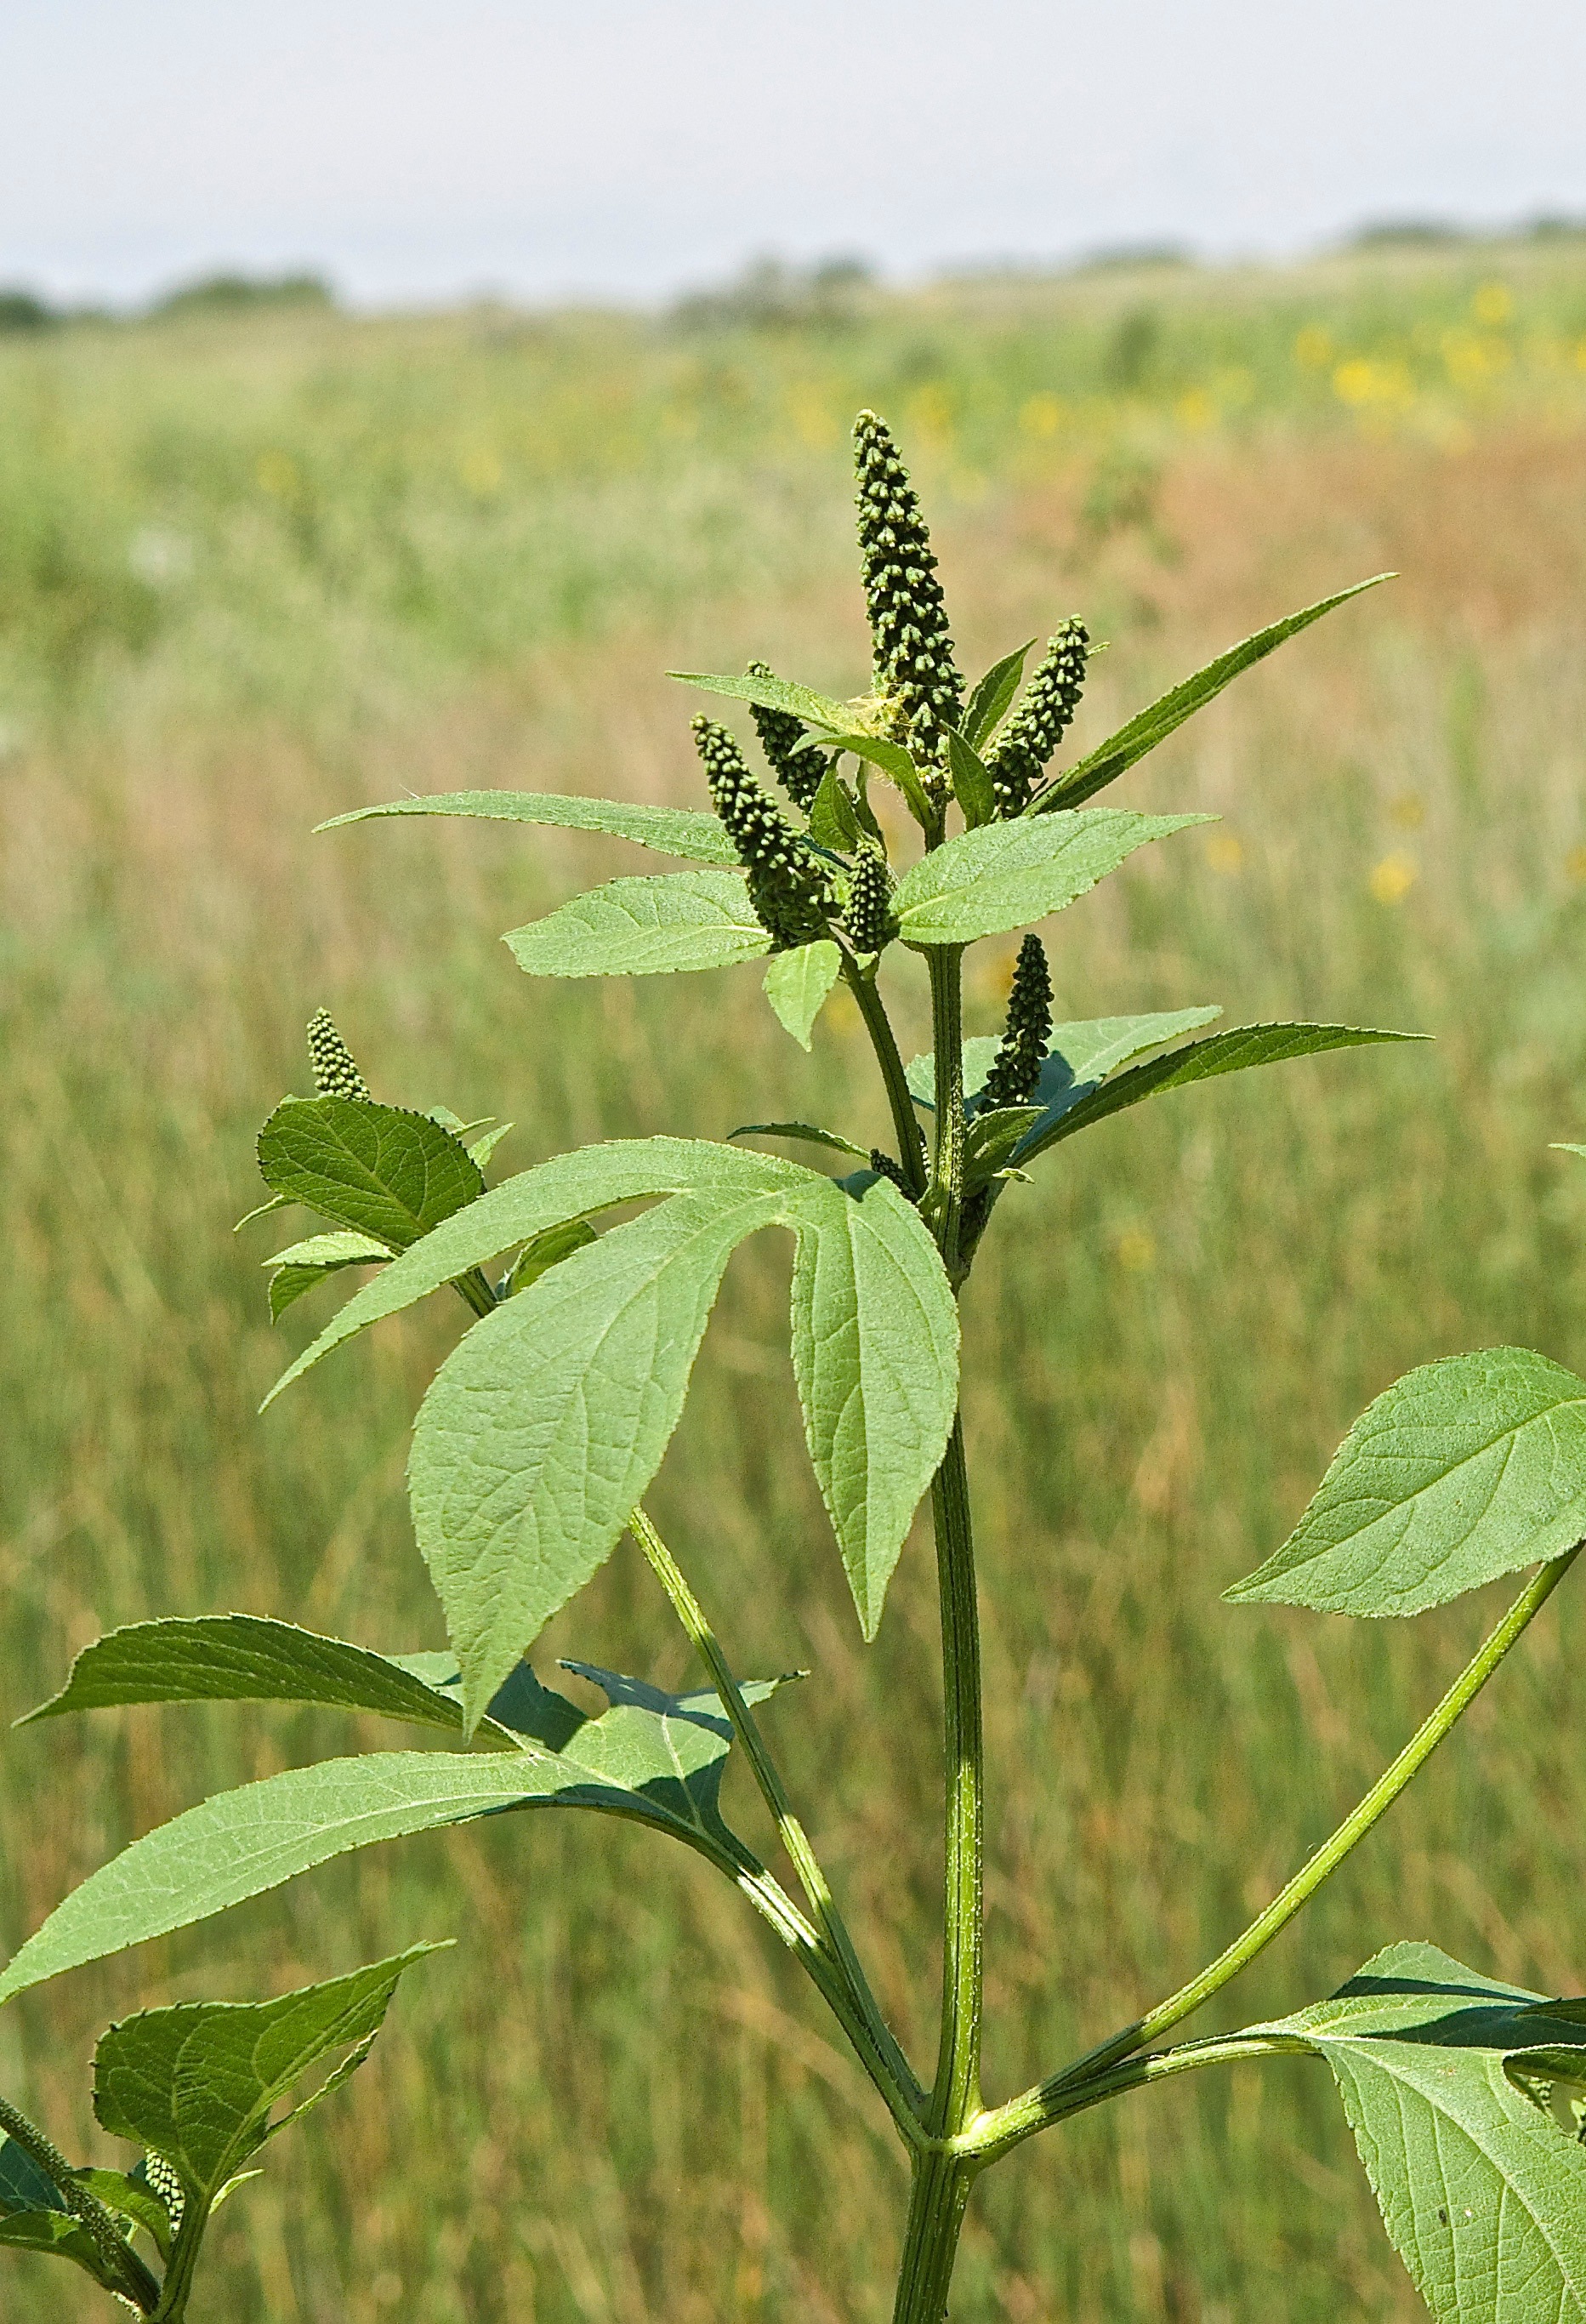 Giant Ragweed (Ambrosia trifida)